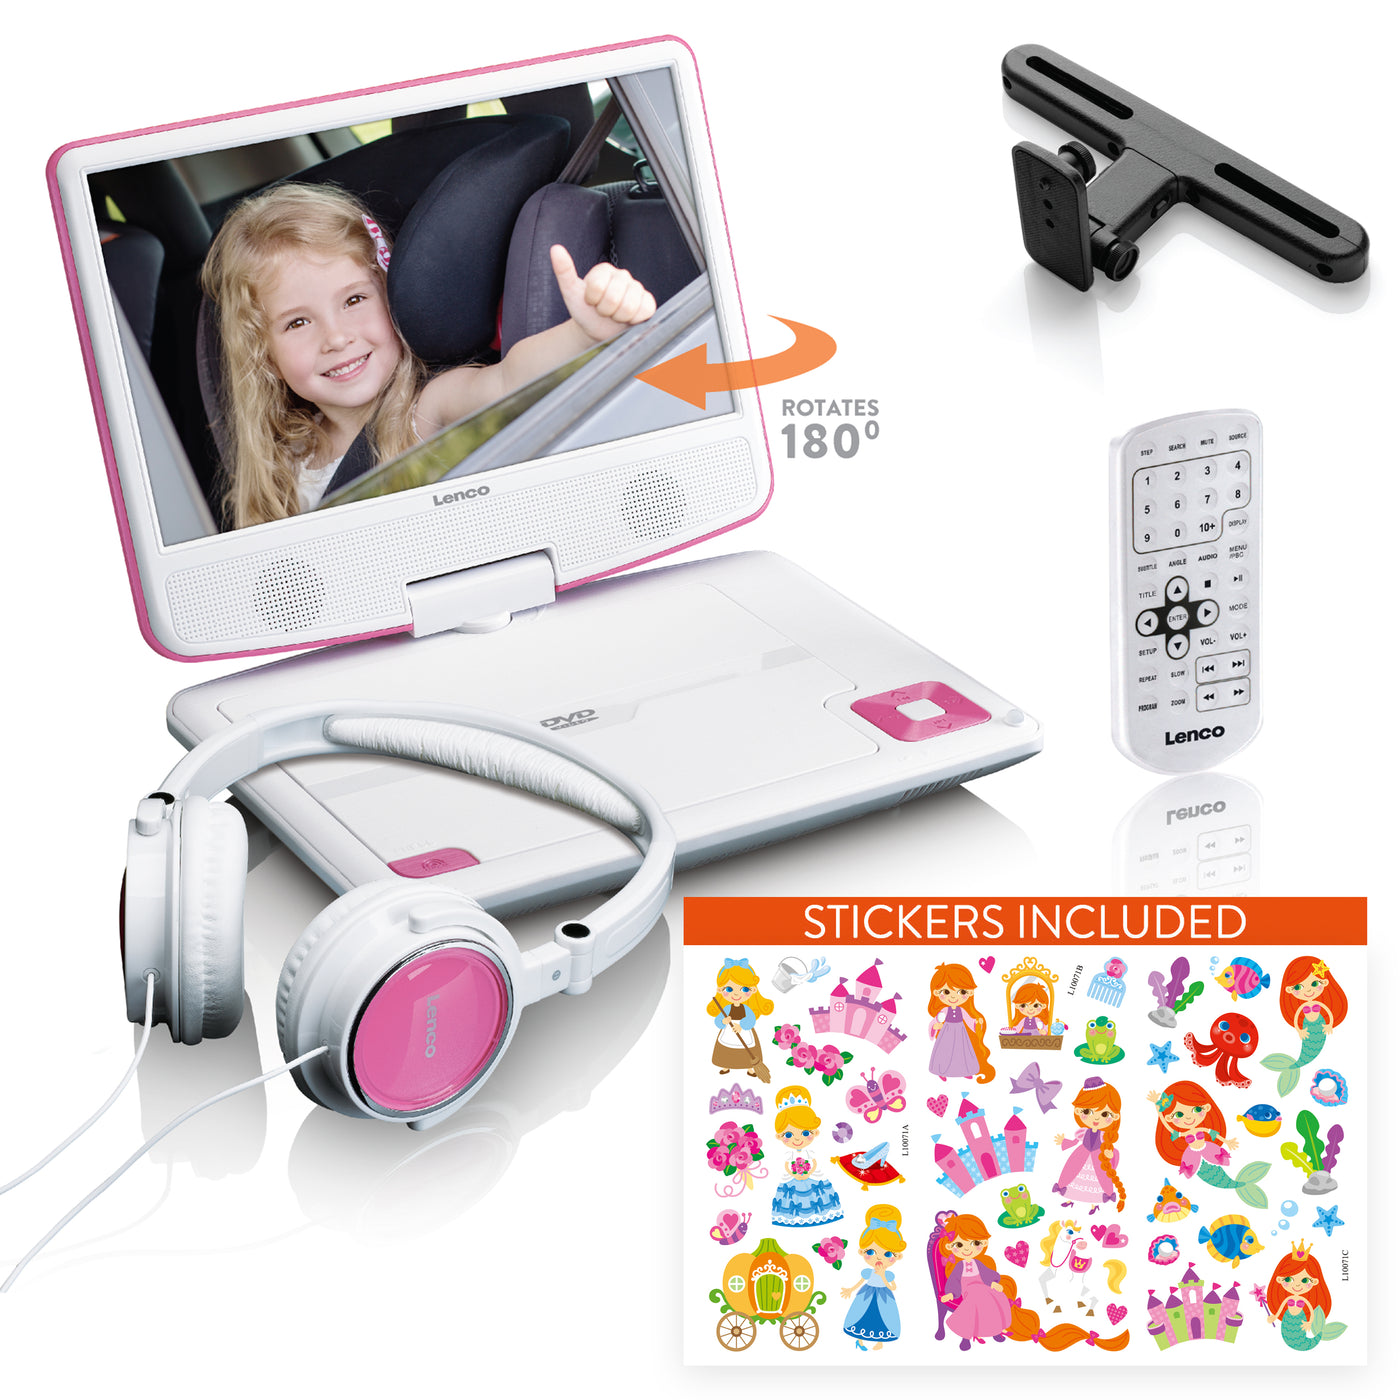 LENCO DVP-920PK - Przenośny odtwarzacz DVD 9" ze słuchawkami USB i uchwytem montażowym - Różowy/Biały